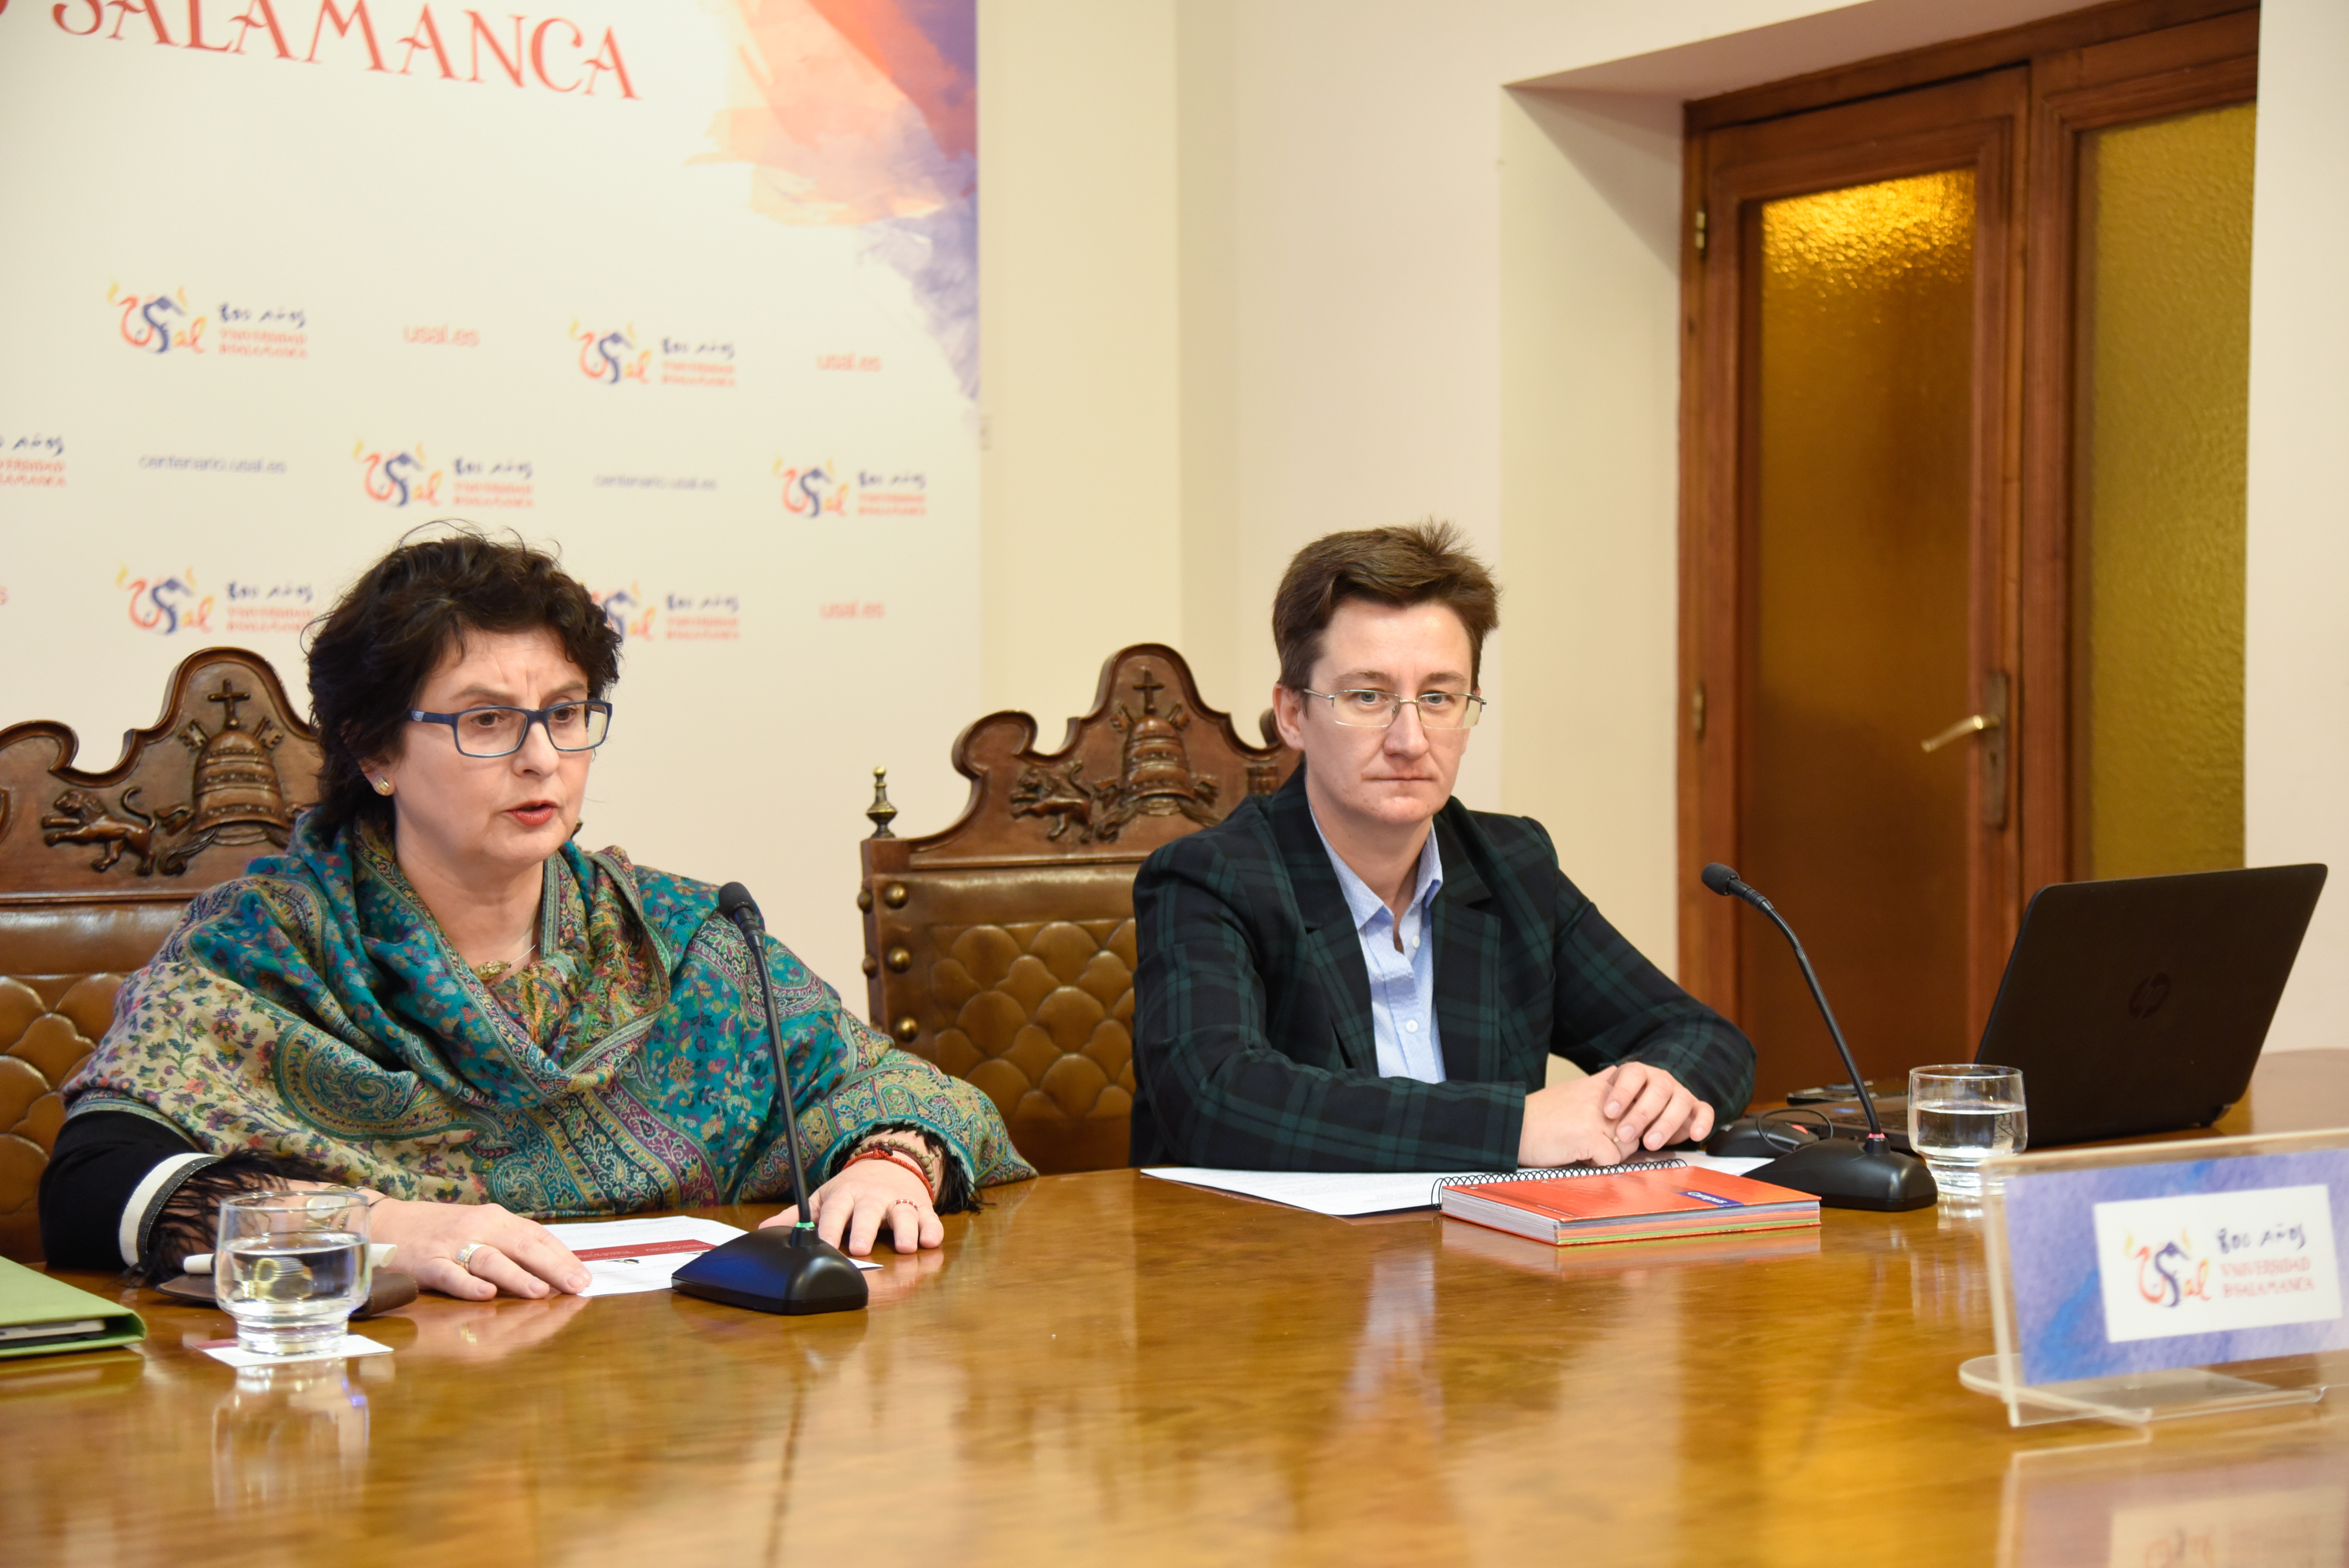 La Universidad de Salamanca presenta el Observatorio de Buenas Prácticas y Mejora Continua para impulsar la cultura de calidad 